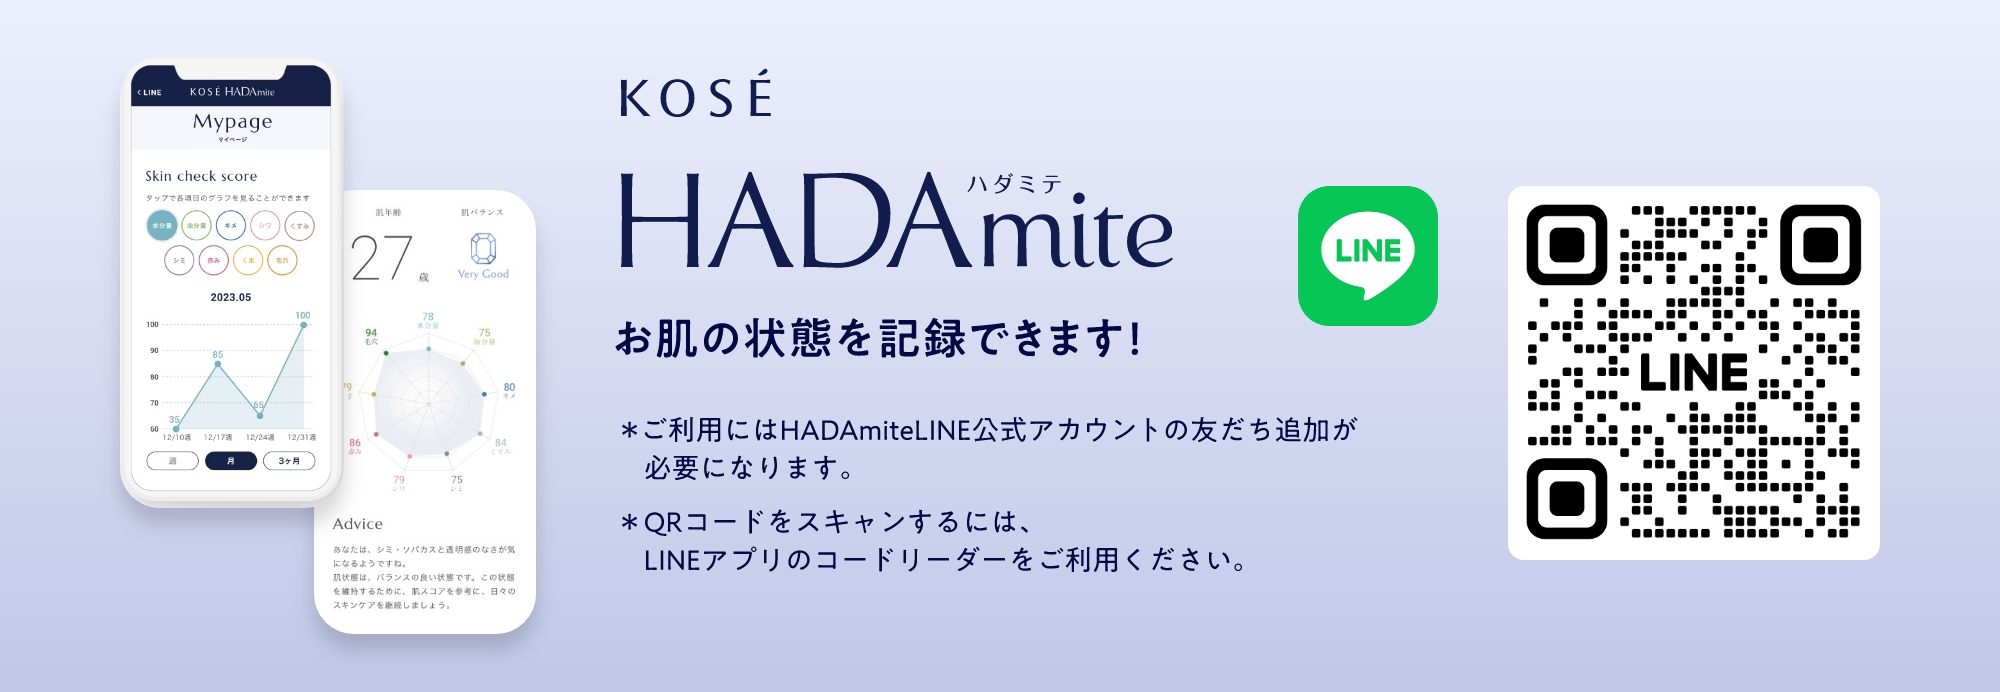 KOSE HADA mite お肌の状態を記録できます！※ご利用にはHADAmiteのLINE友だちへの登録が必要になります。※QRコードをスキャンするにはLINEアプリのコードリーダーをご利用ください。